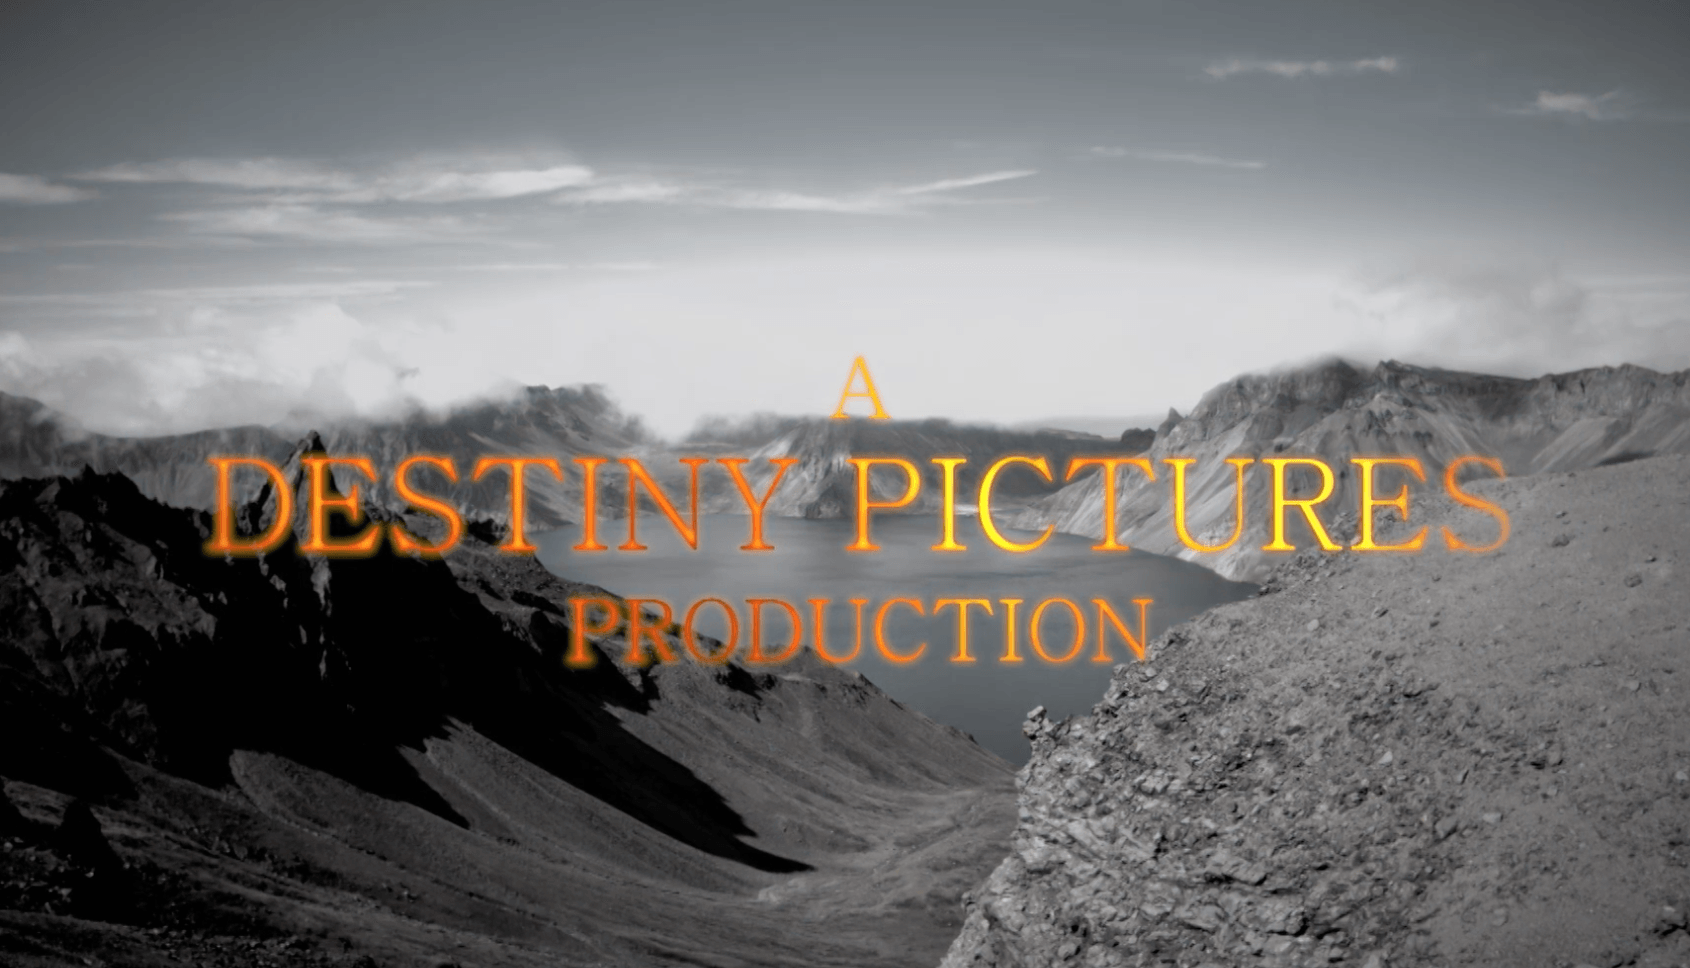 Destiny Pictures Production